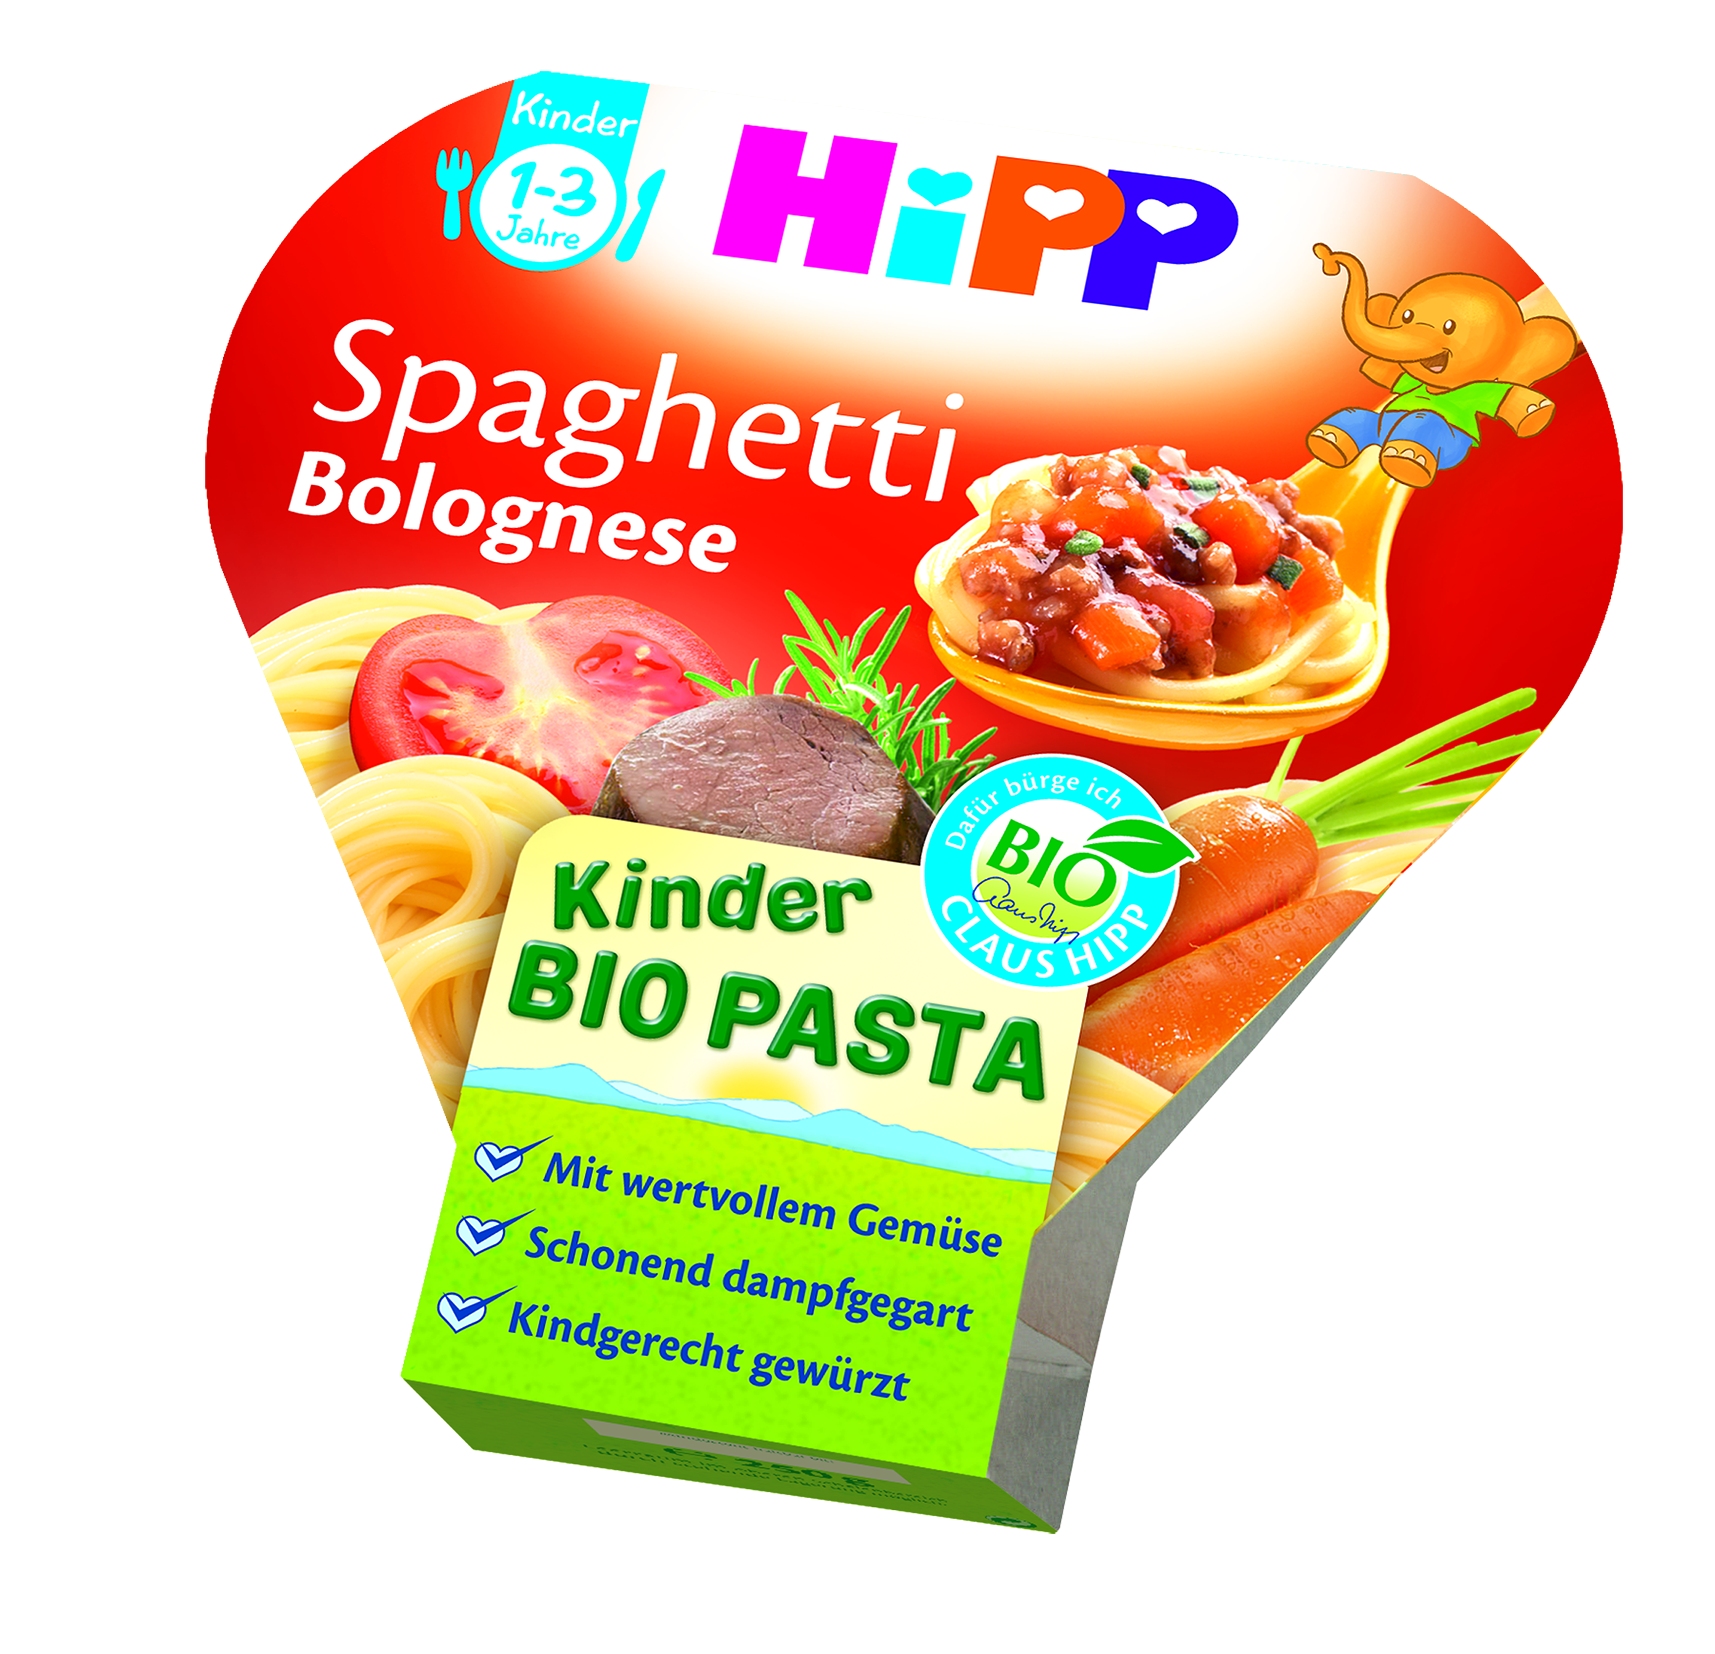 Bio Pasta 8635 Spaghetti Bolognese